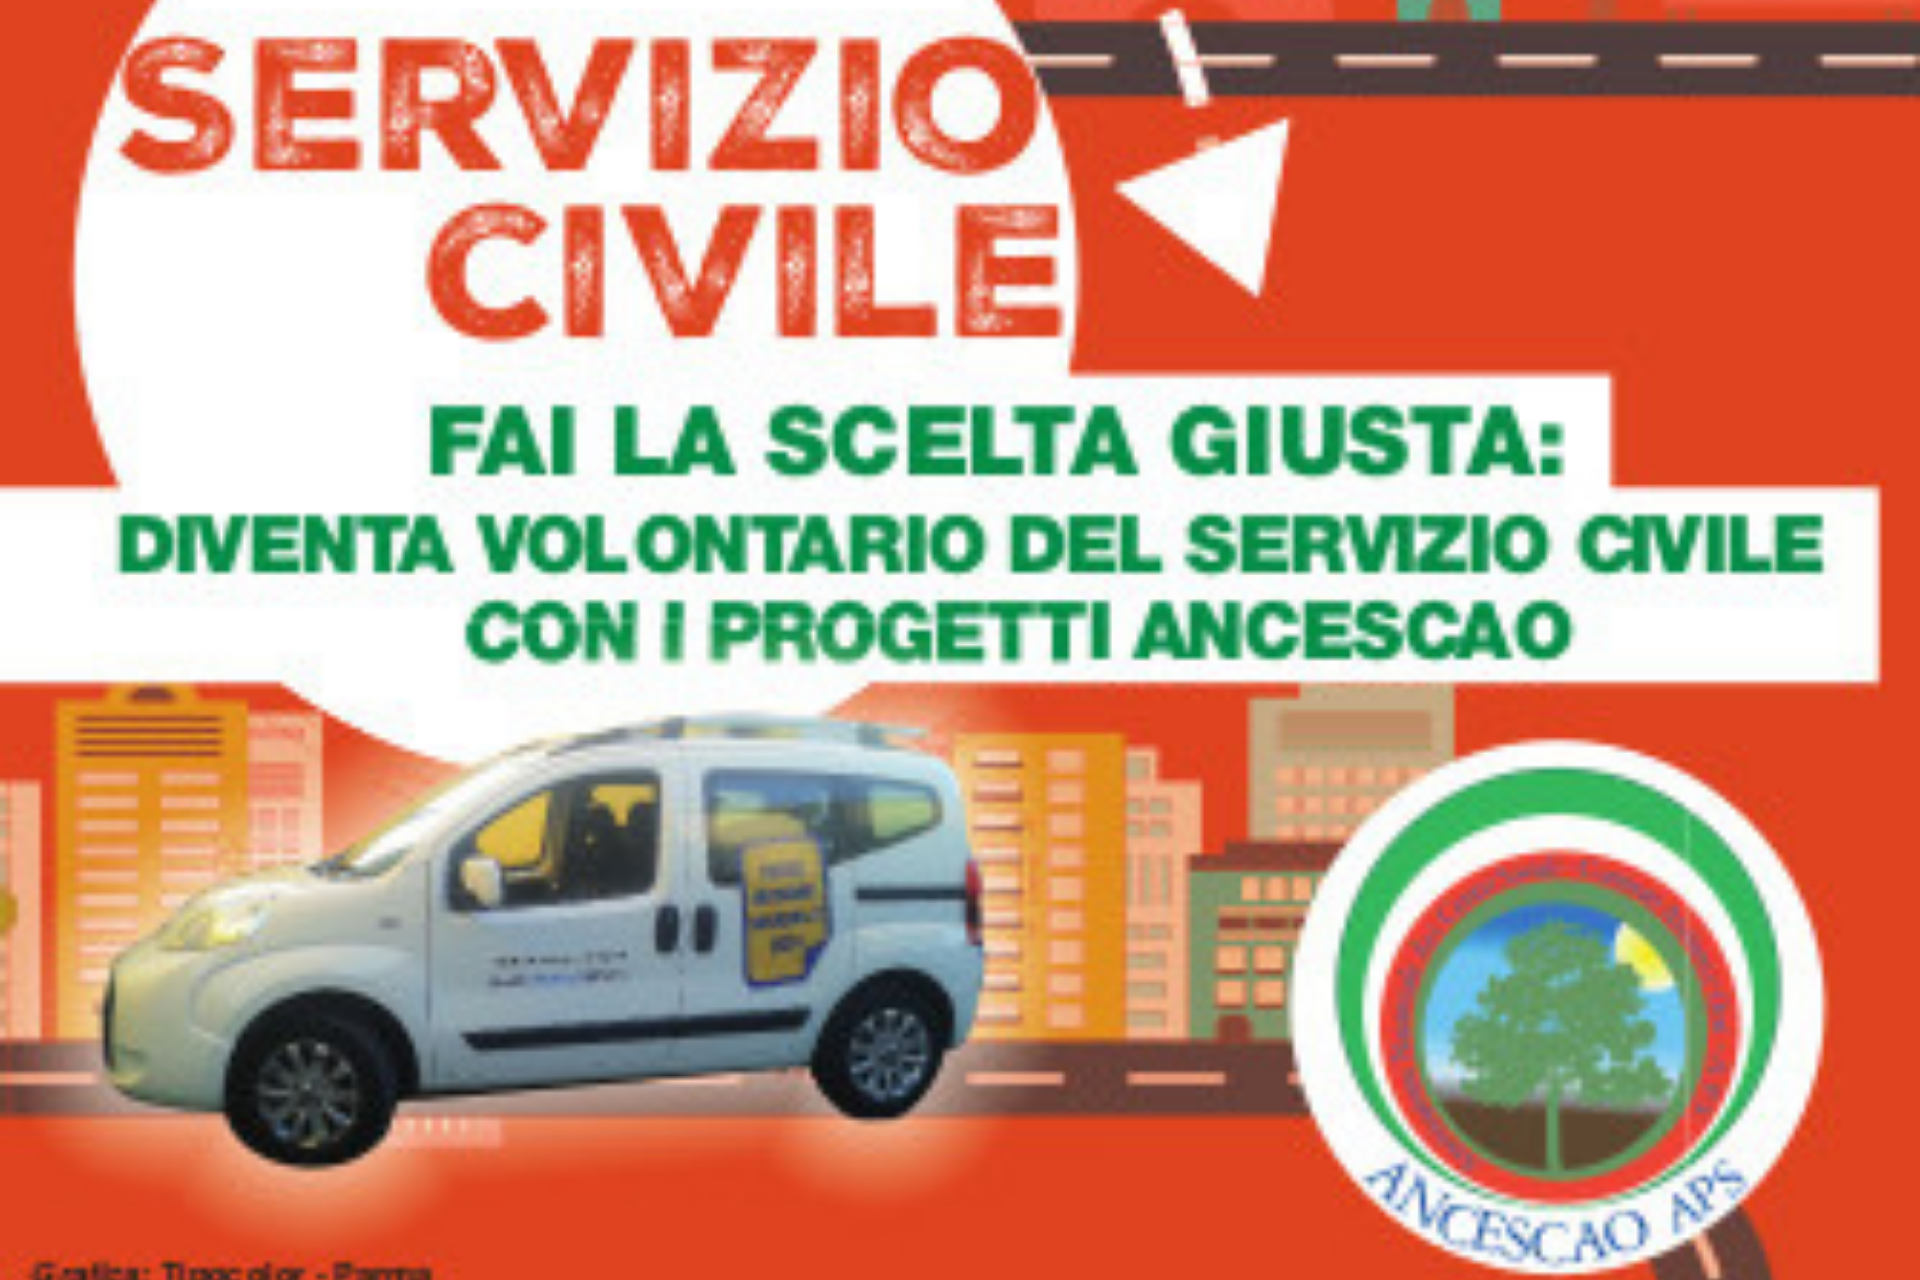 ANCeSCAO Emilia Romagna e ANCeSCAO Bologna hanno avuto l’accreditamento per il servizio civile